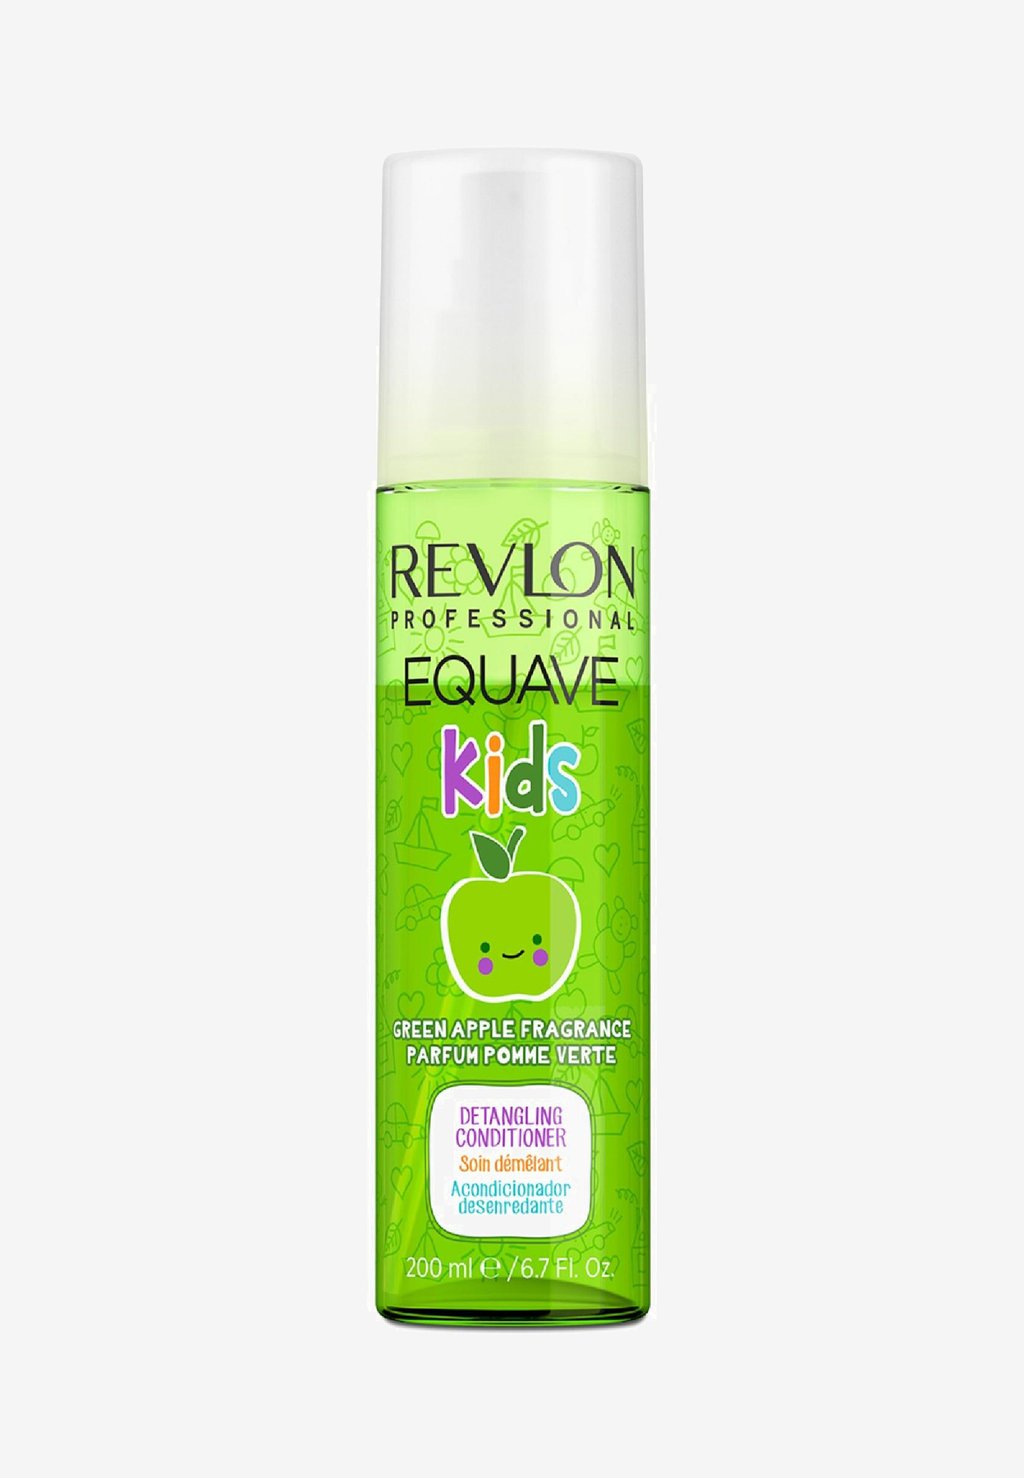 Кондиционер Equave Kids Green Apple Аромат Кондиционер-Расходящий Кондиционер Revlon Professional цена и фото